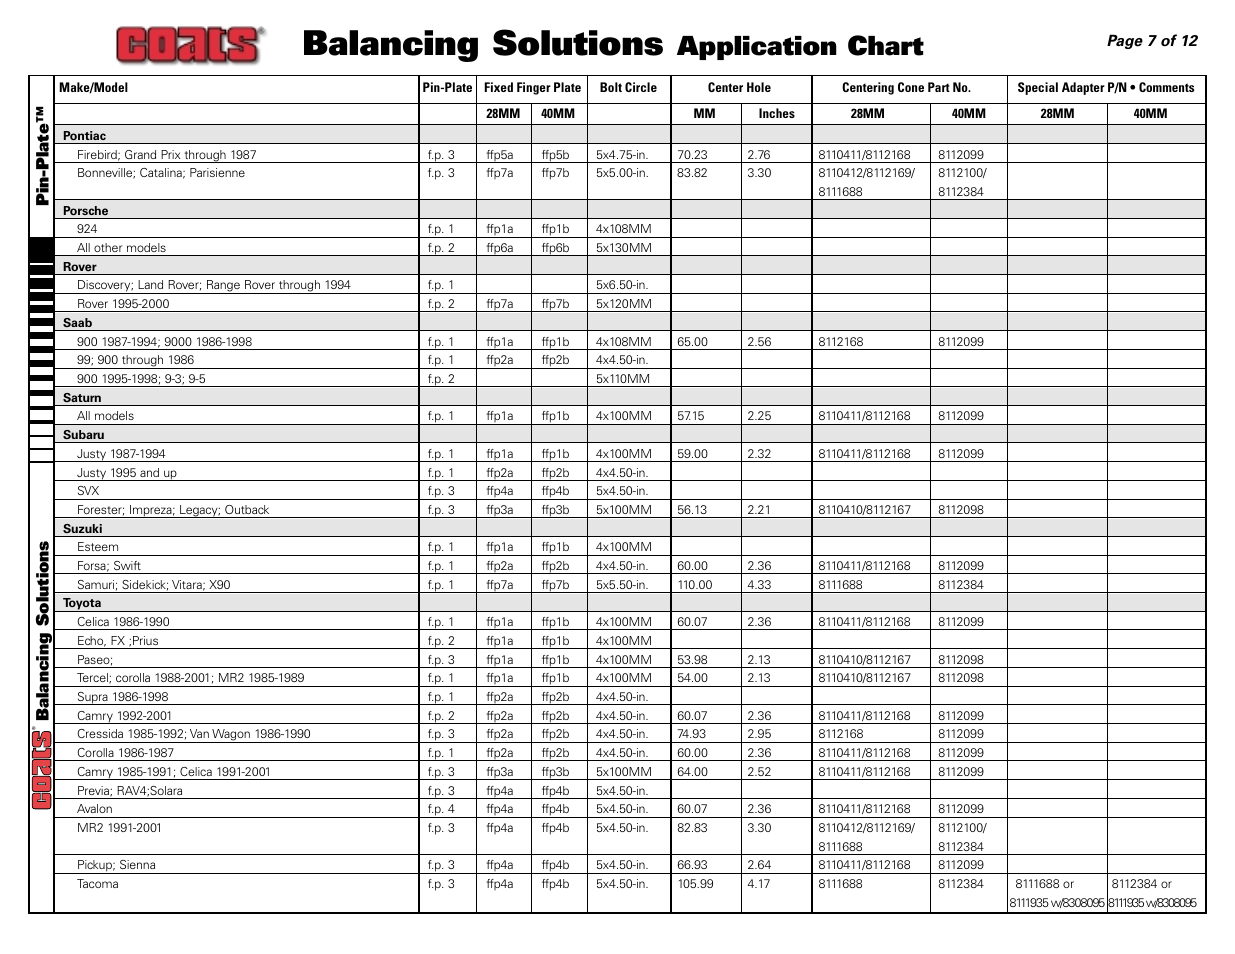 Balancing solutions, Application chart, Pin-plate™ balancing solutions ...